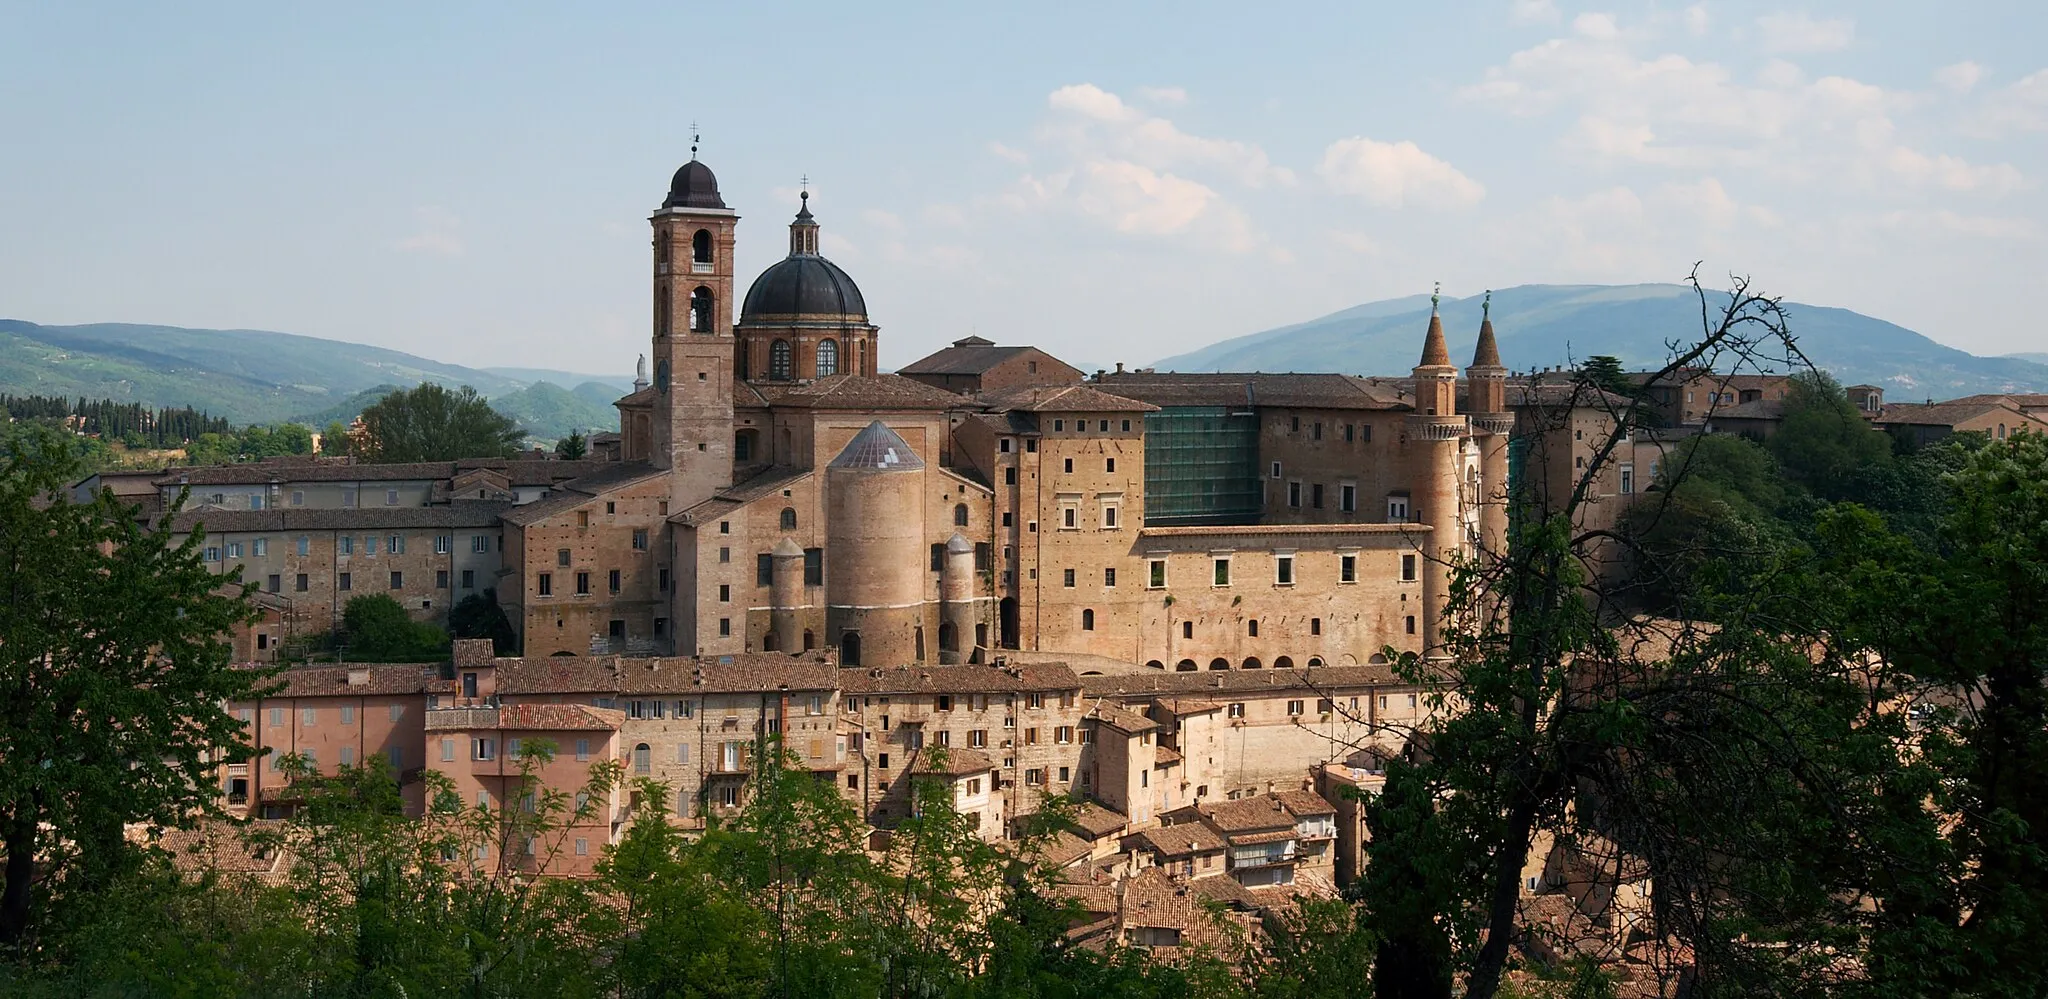 Image of Urbino